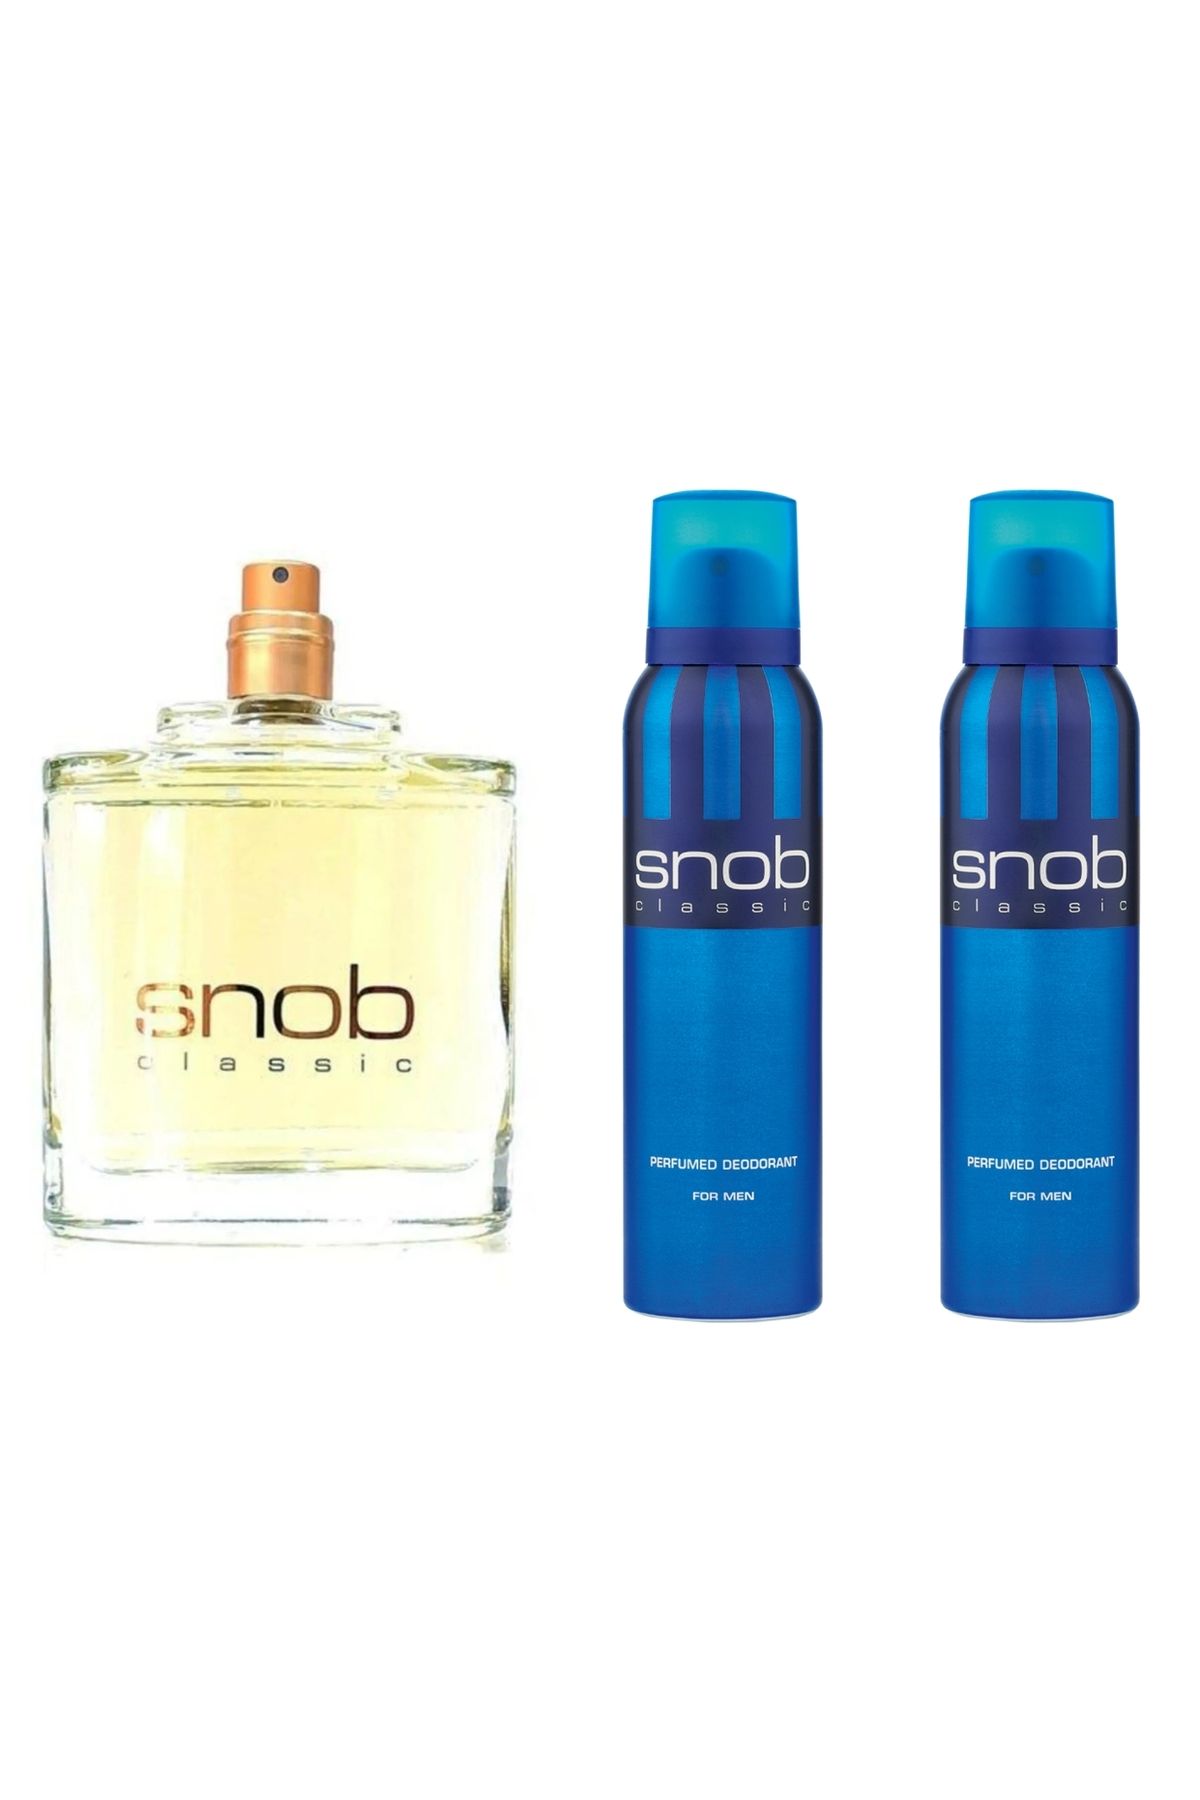 Snob Mavi Klasik Erkek Parfüm (Kutusuz Ve Kapaksız) 100ml Edt + 2 Adet 150 ml Snop Deodorant